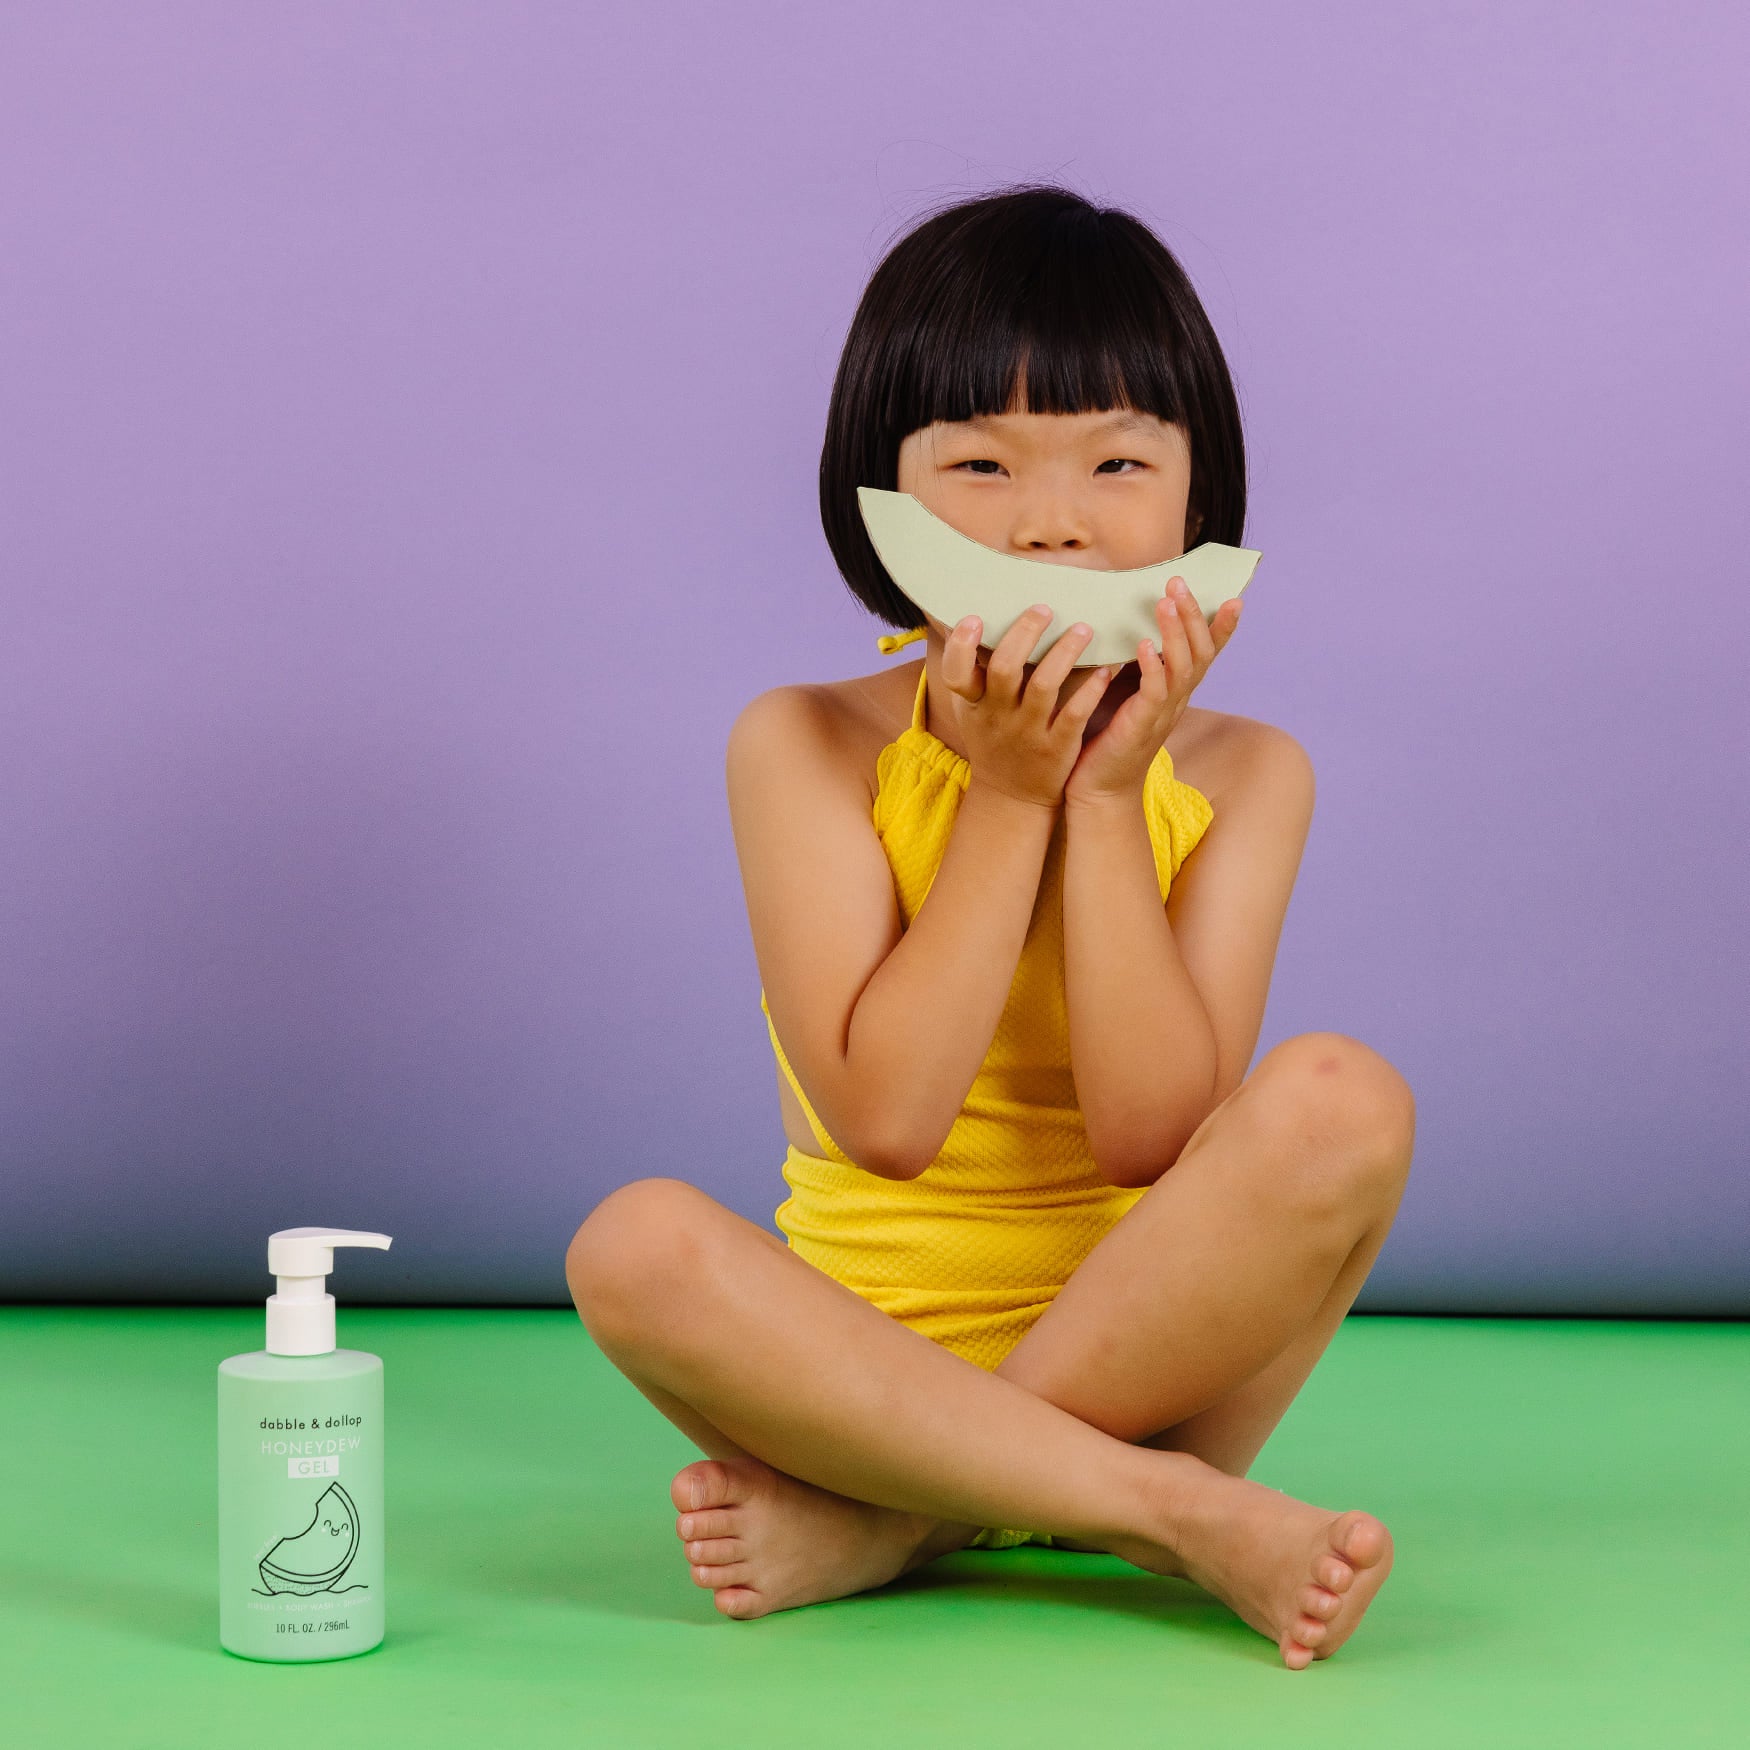 Shampoo & Body Wash - Honeydew Melon